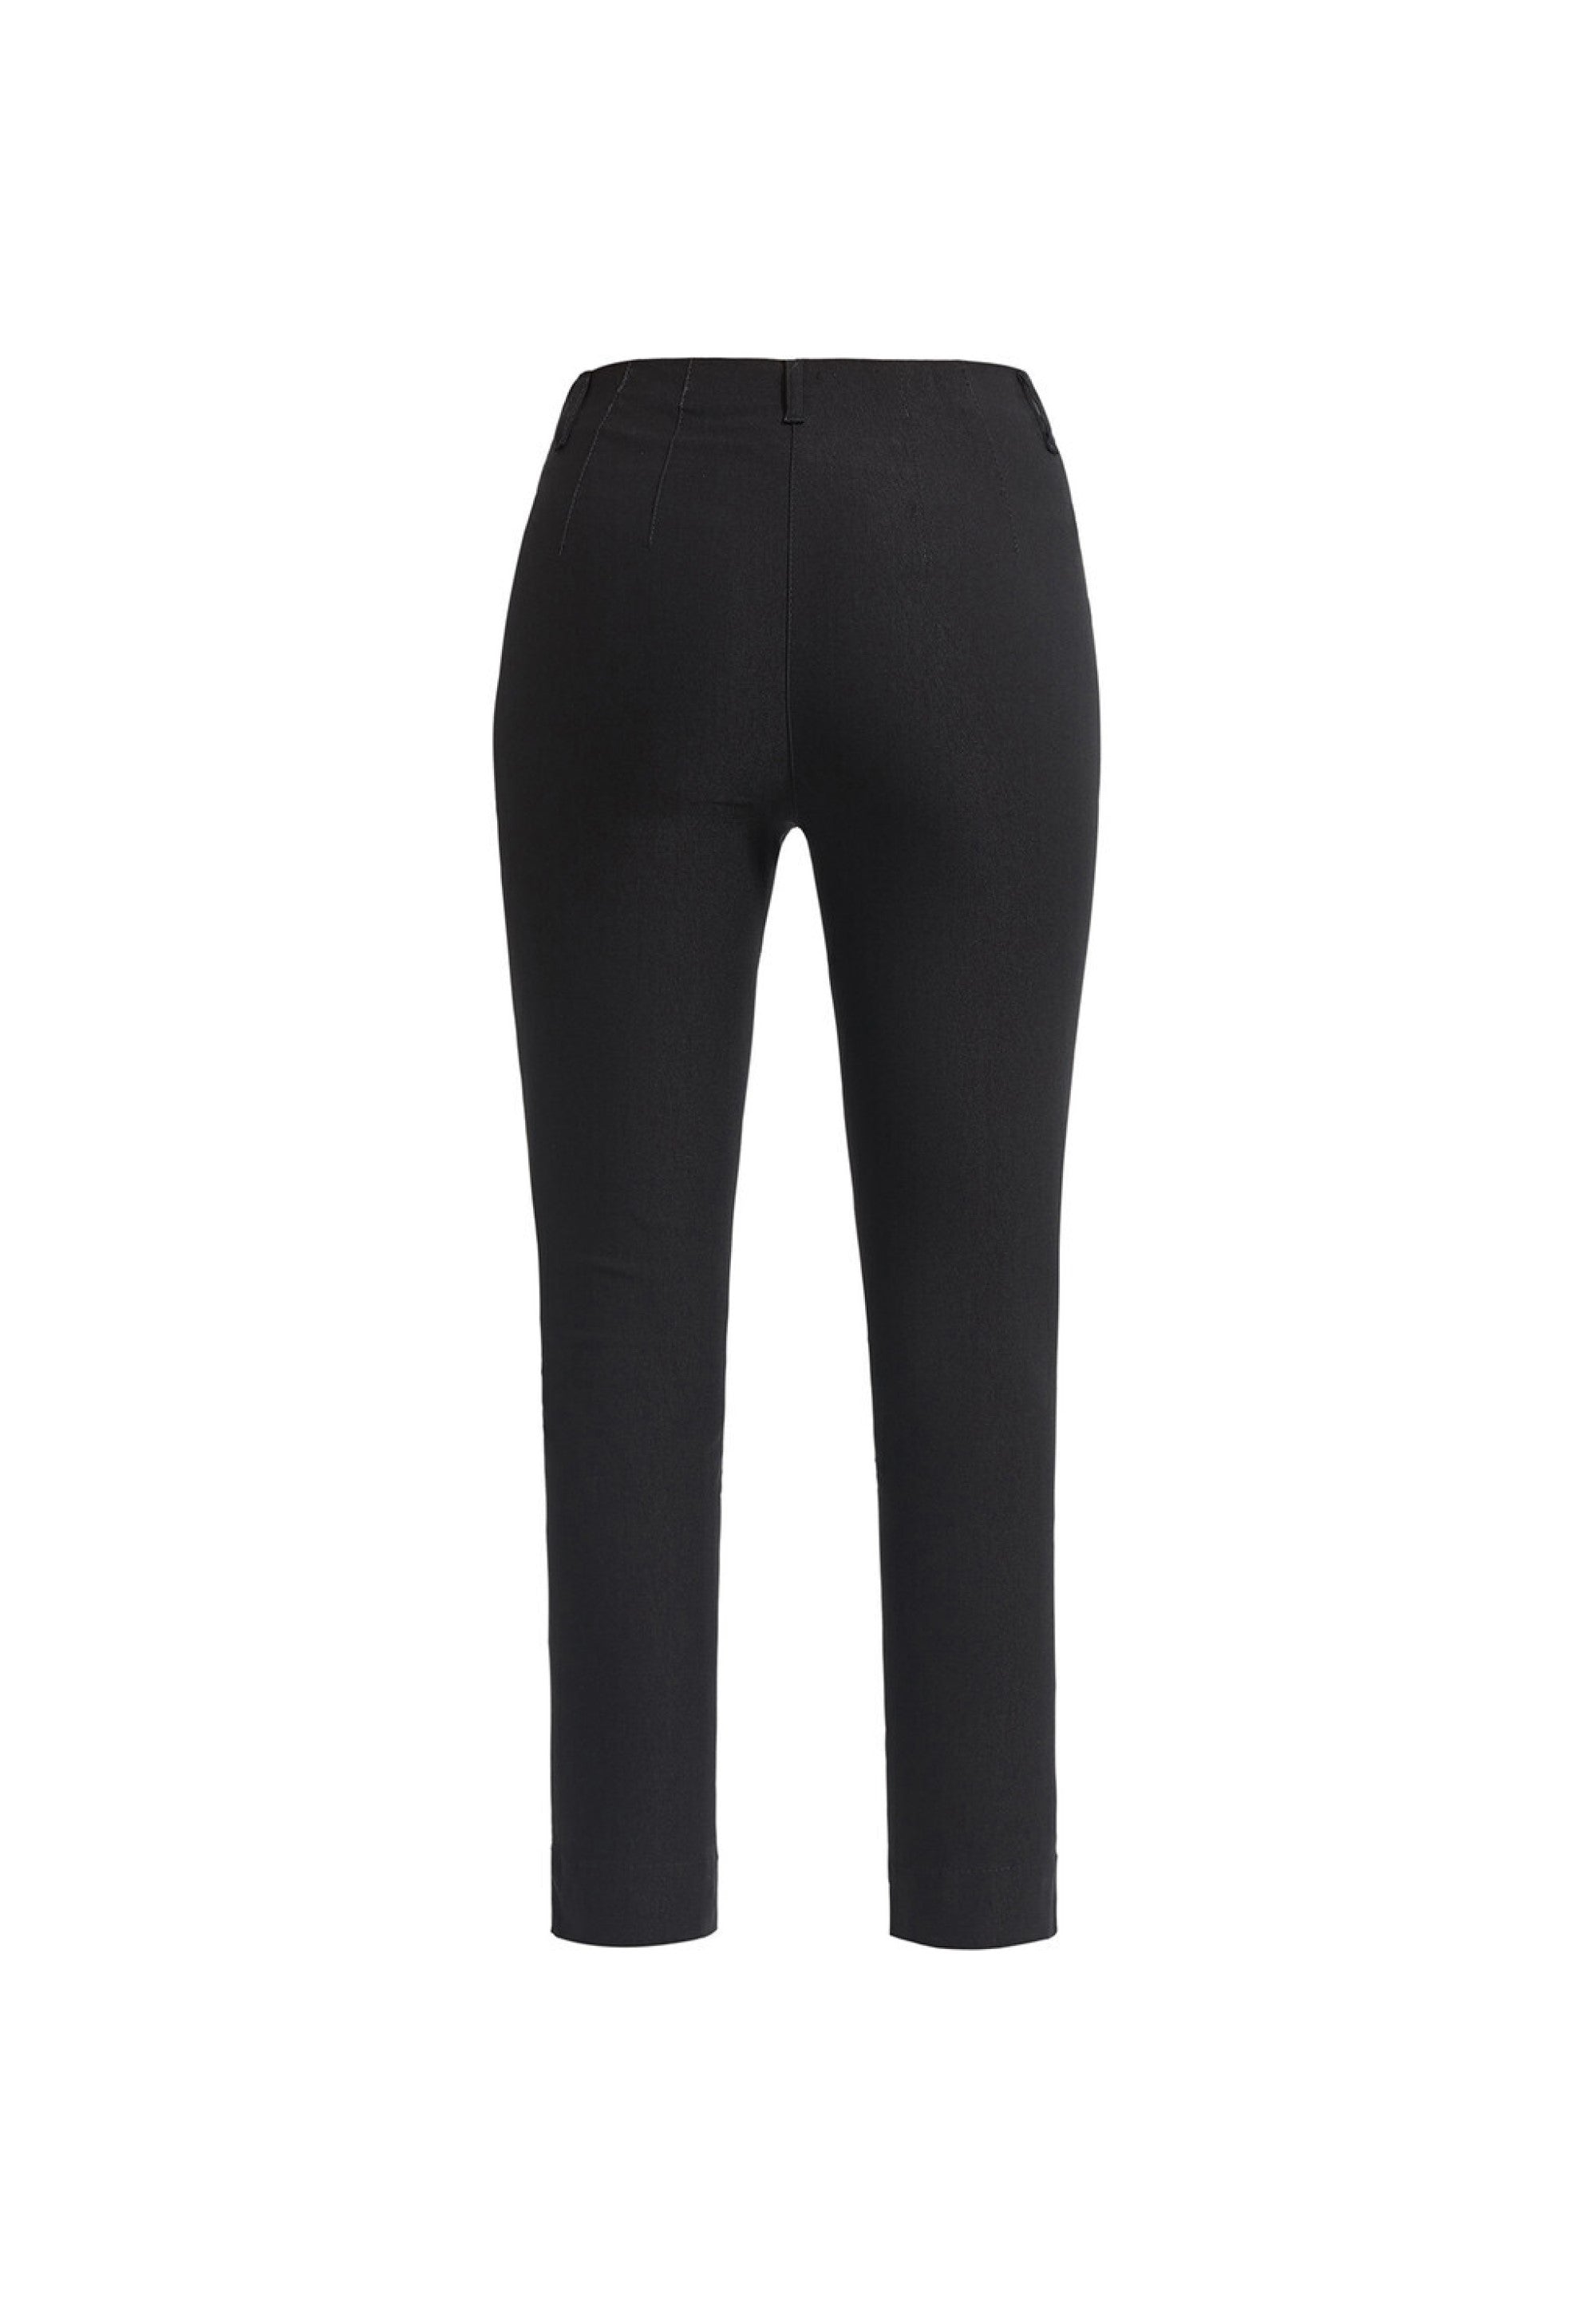 LAURIE Elizabeth Slim - Short Length Trousers SLIM 99000 Black